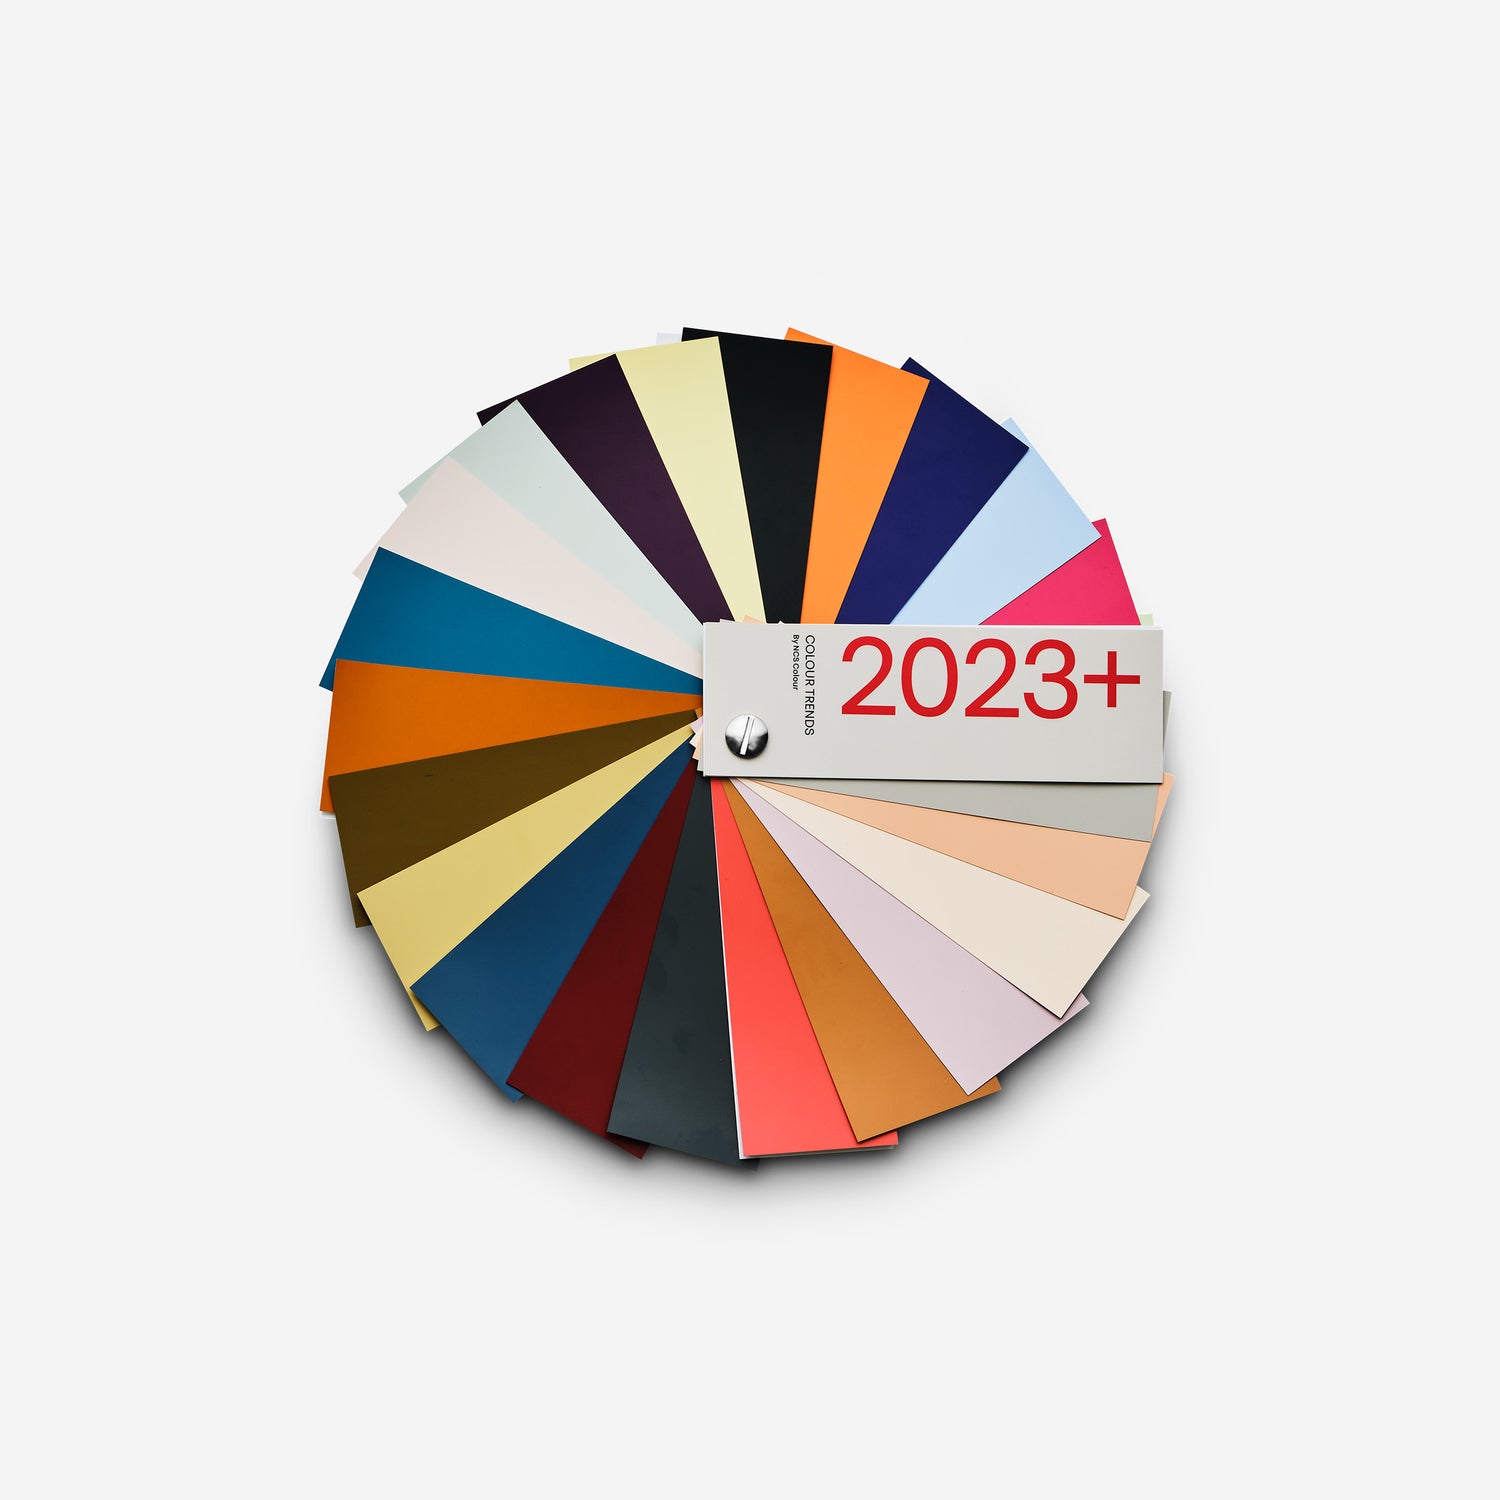 NCS Colour Trends 2023+, fandeck